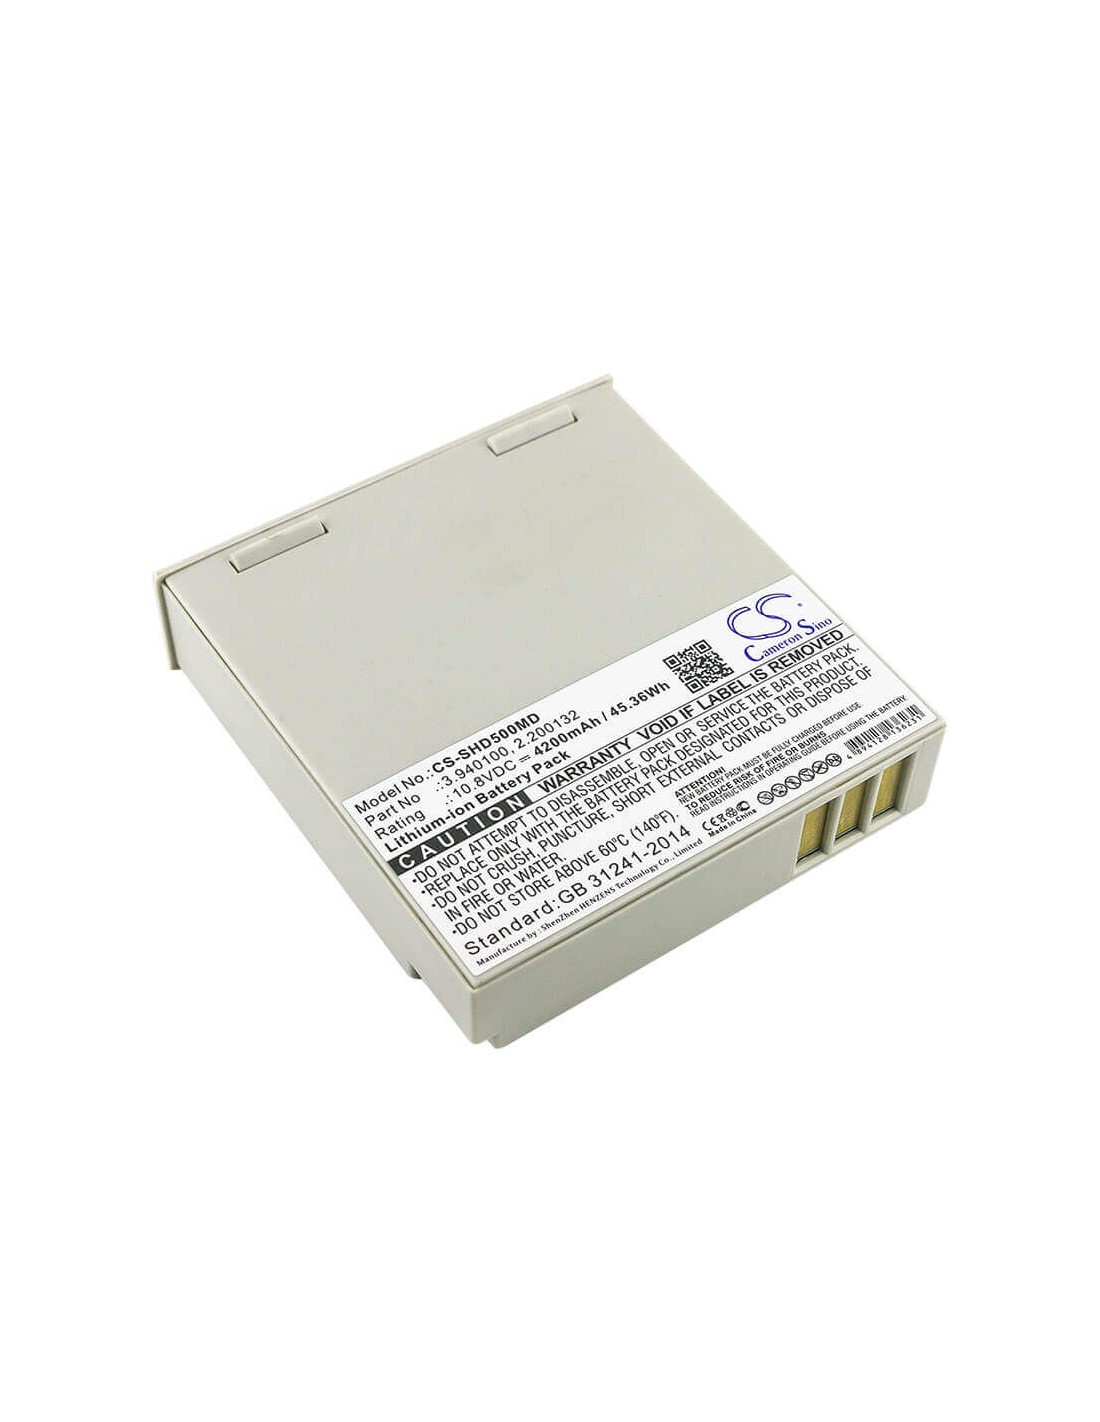 Battery for Schiller, Argus Pro Lifecare 2, Defigard 5000, 10.8V, 4200mAh - 45.36Wh